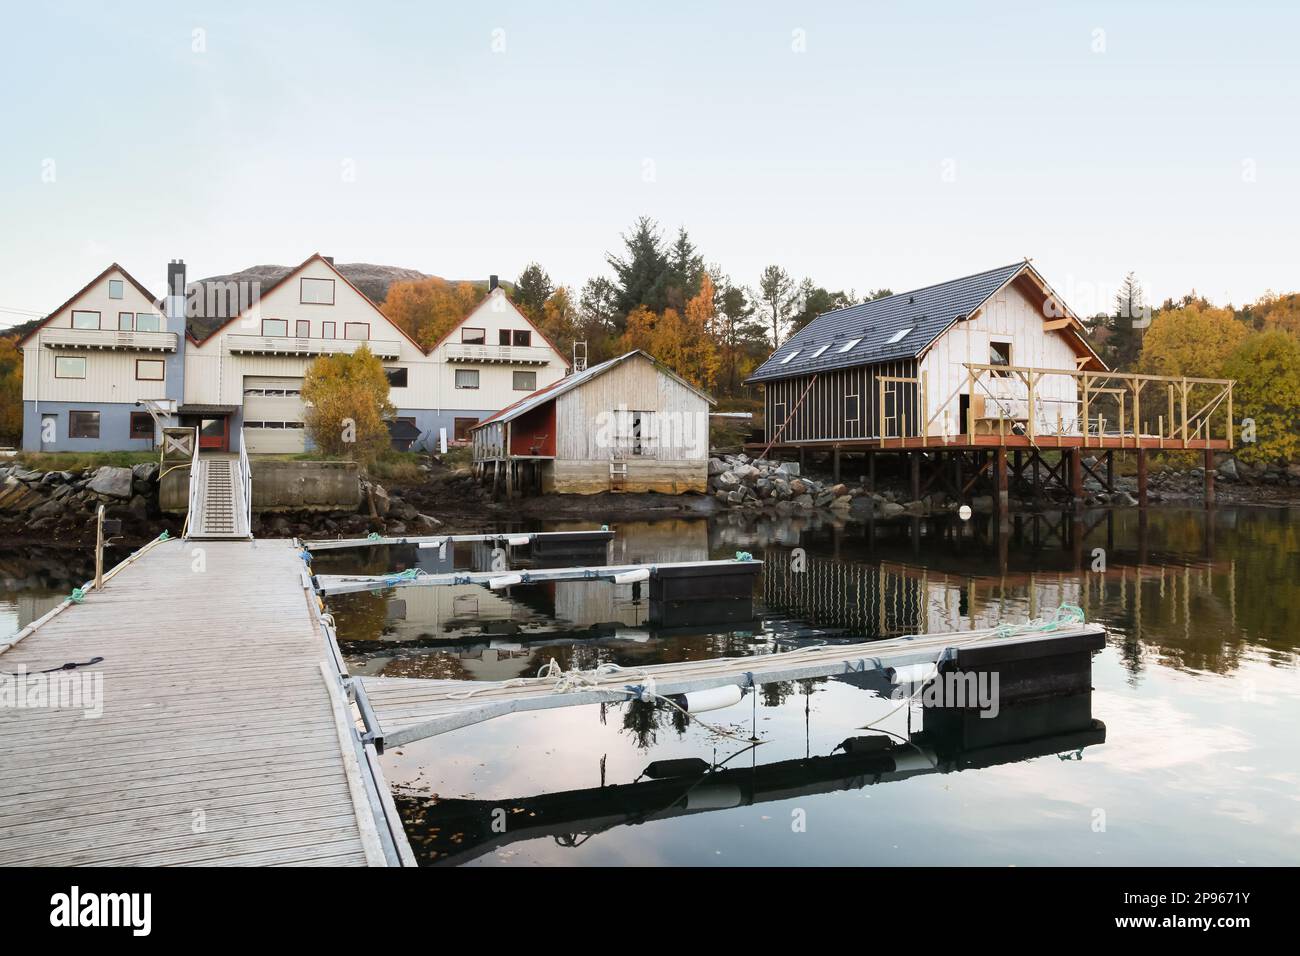 Village de pêcheurs norvégien, vue sur la côte avec maisons en bois et granges sur la côte de la mer. Snillfjord, région de SOR-Trondelag, Vingvagen Banque D'Images